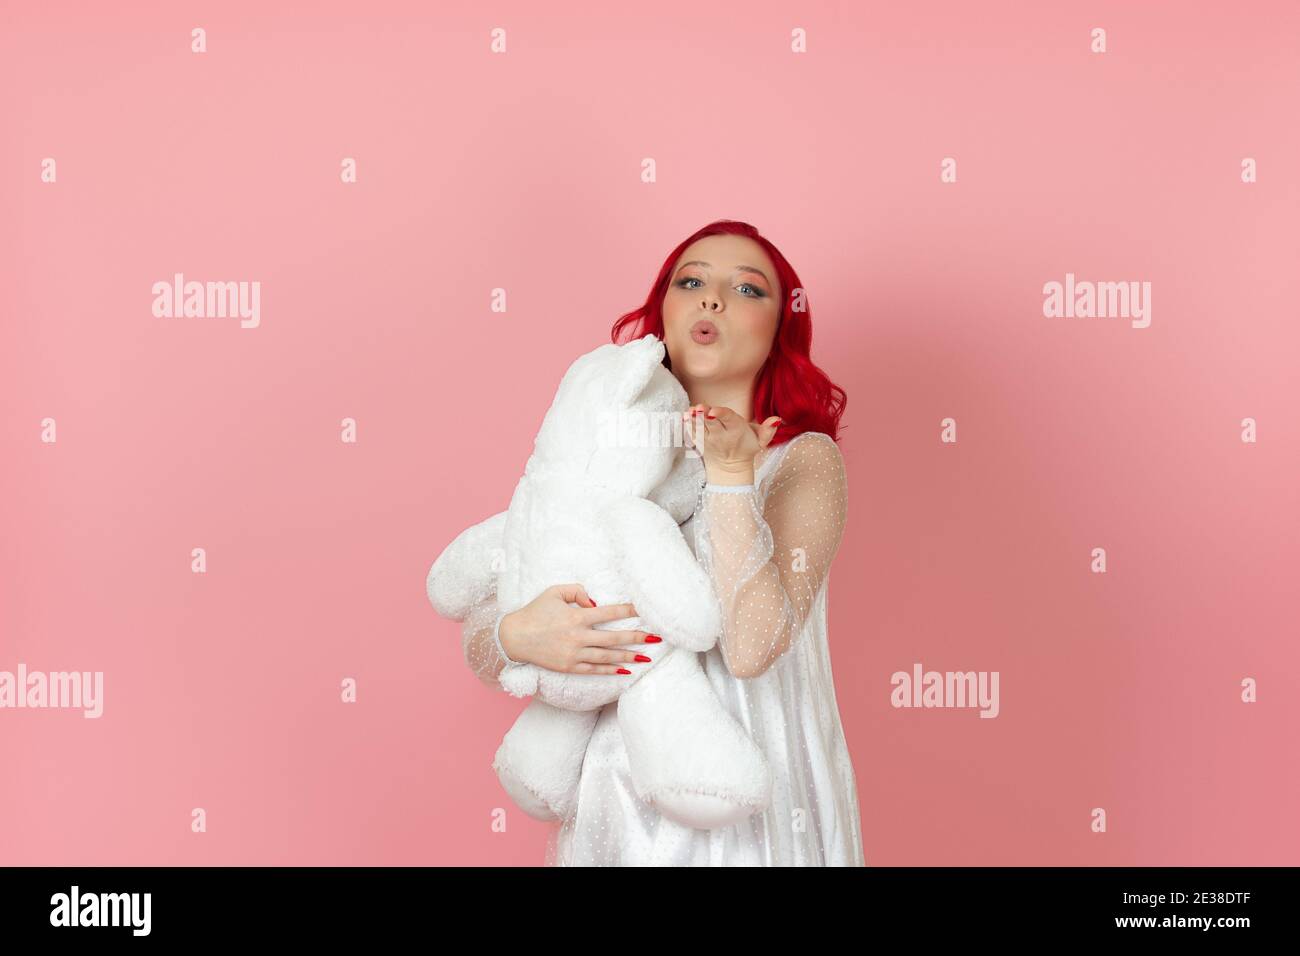 Nahaufnahme eine niedliche junge Frau in einem weißen Kleid und mit roten Haaren bläst einen Kuss und umarmt großen weißen Teddybär isoliert auf einem rosa Hintergrund. Stockfoto